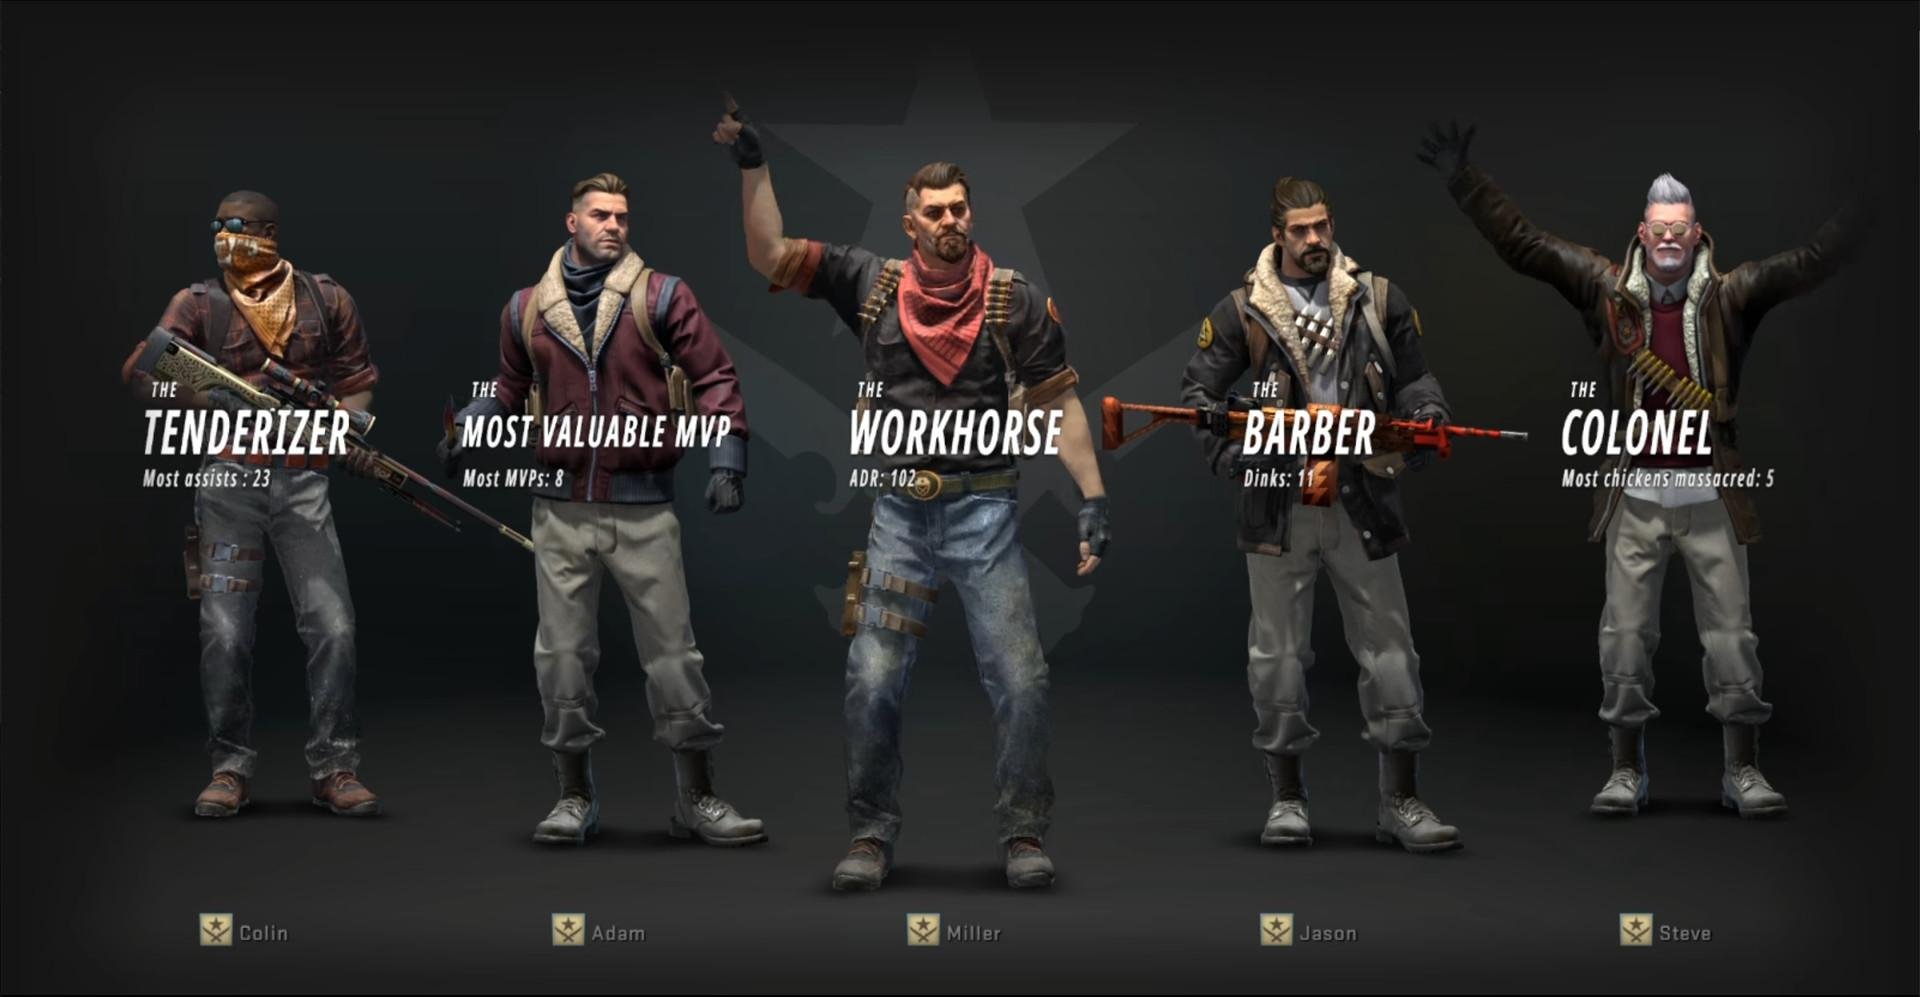 Counter Strike 2: Beta disponível para terceira onda de jogadores » Retakebr